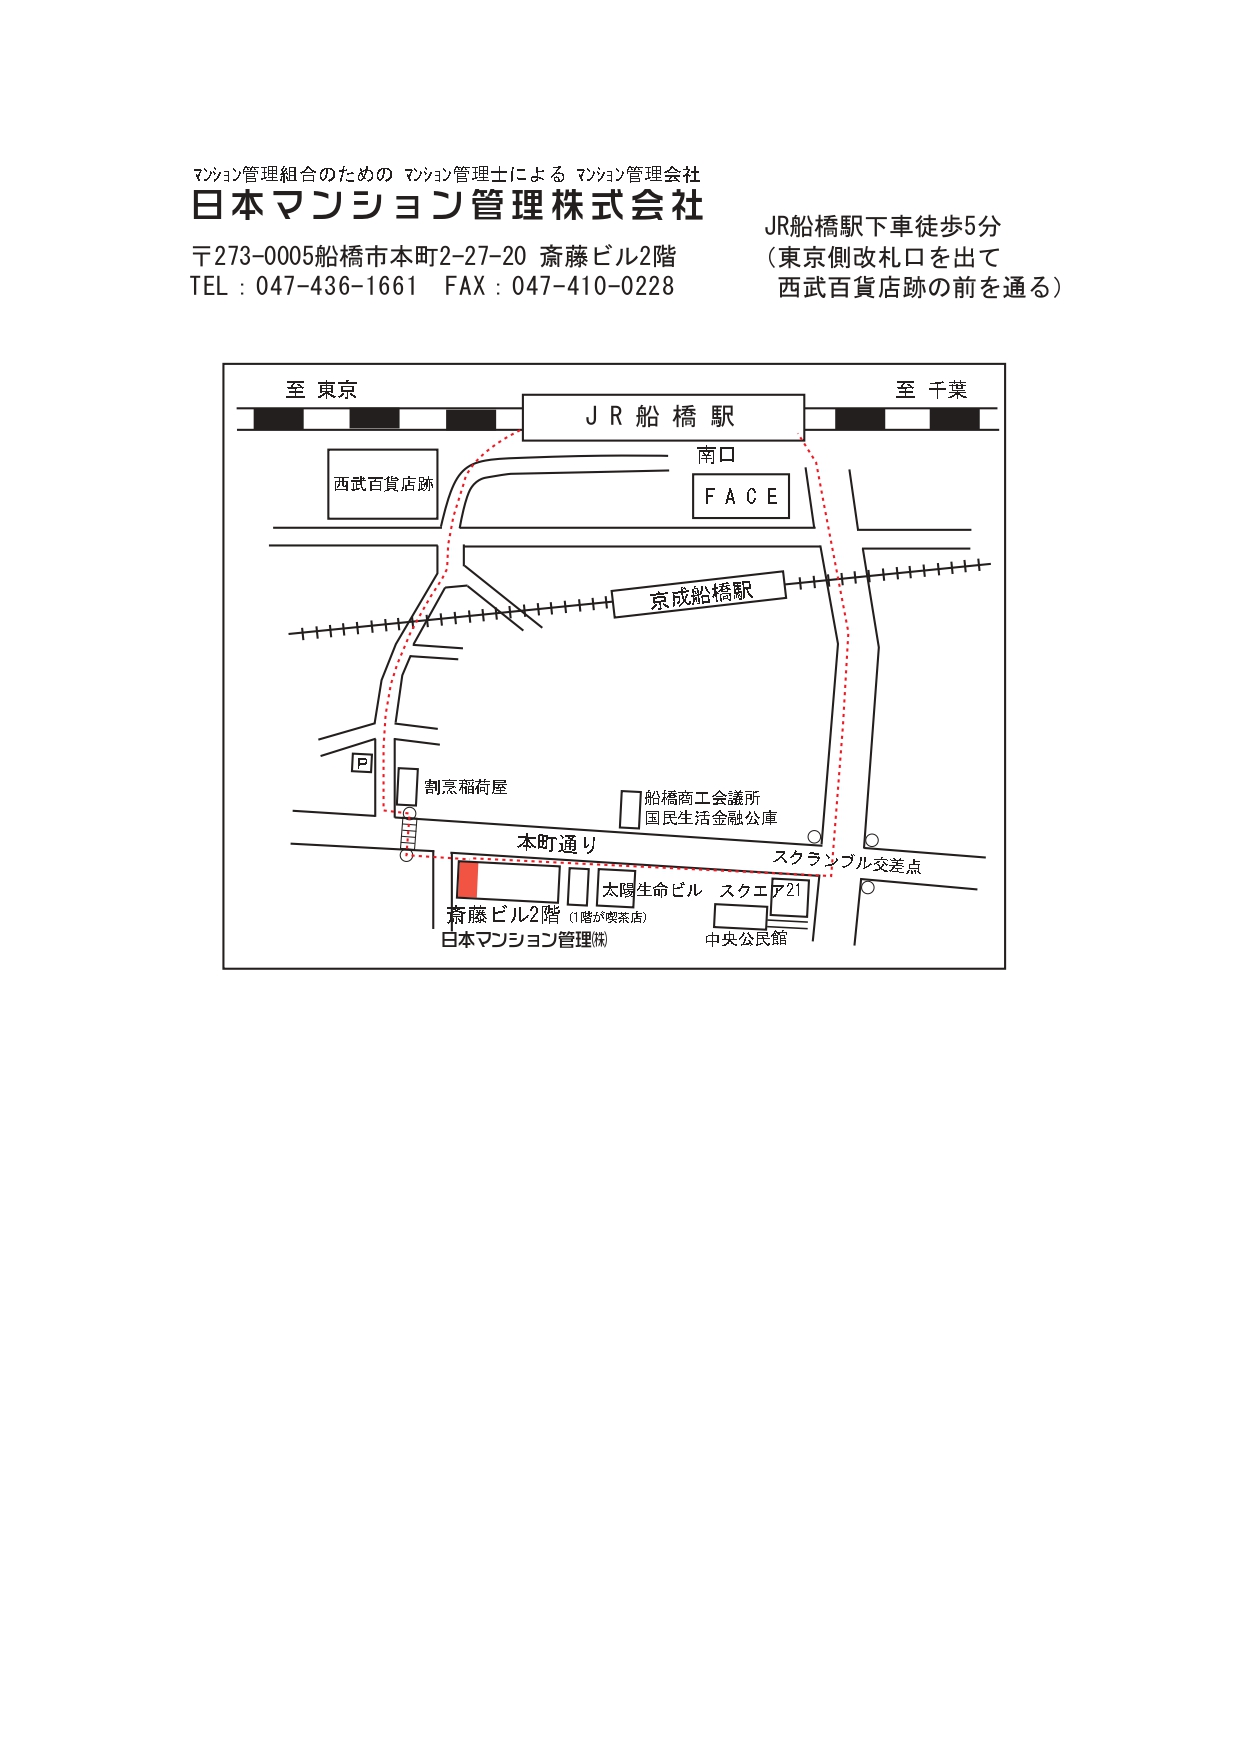 事務所地図（日マン管2023.9.1)_page-0001